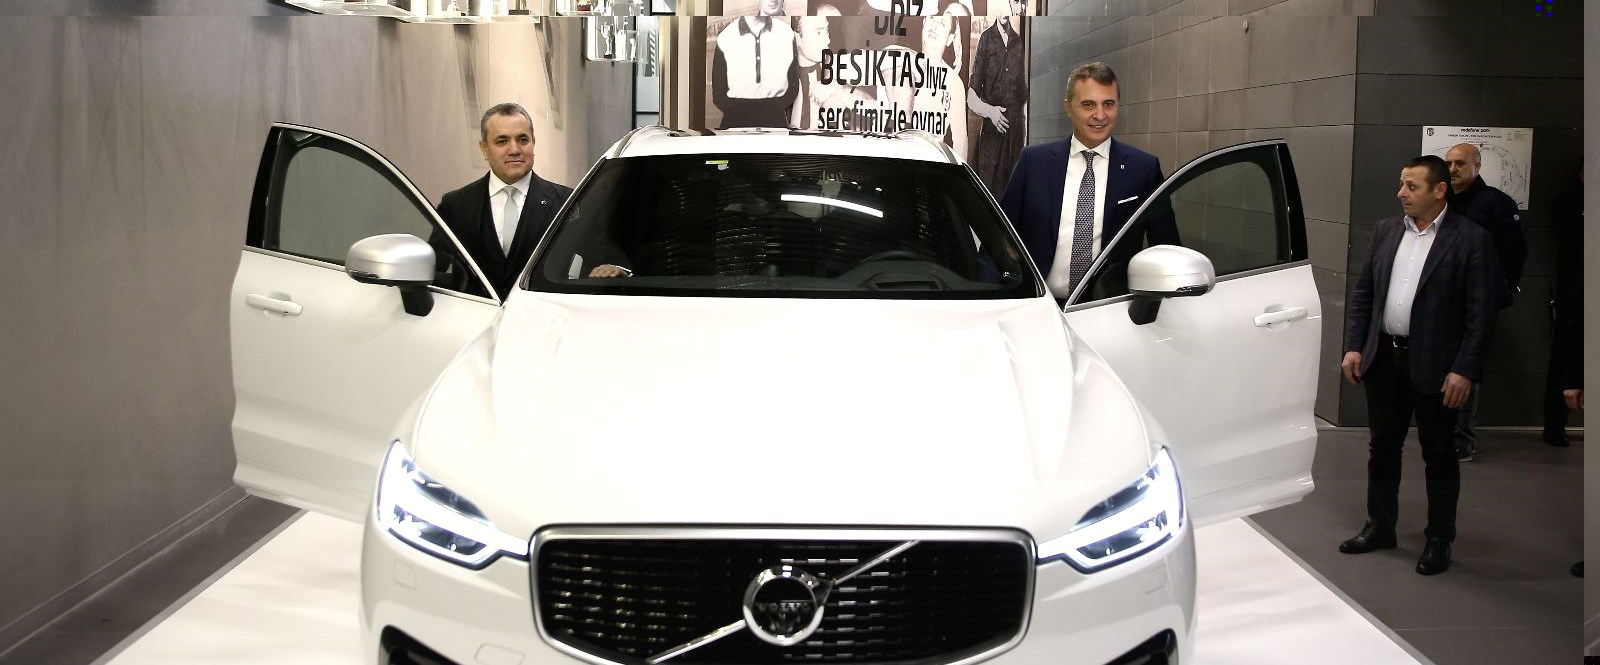 Beşiktaş, Volvo ile sponsorluk anlaşması imzaladı